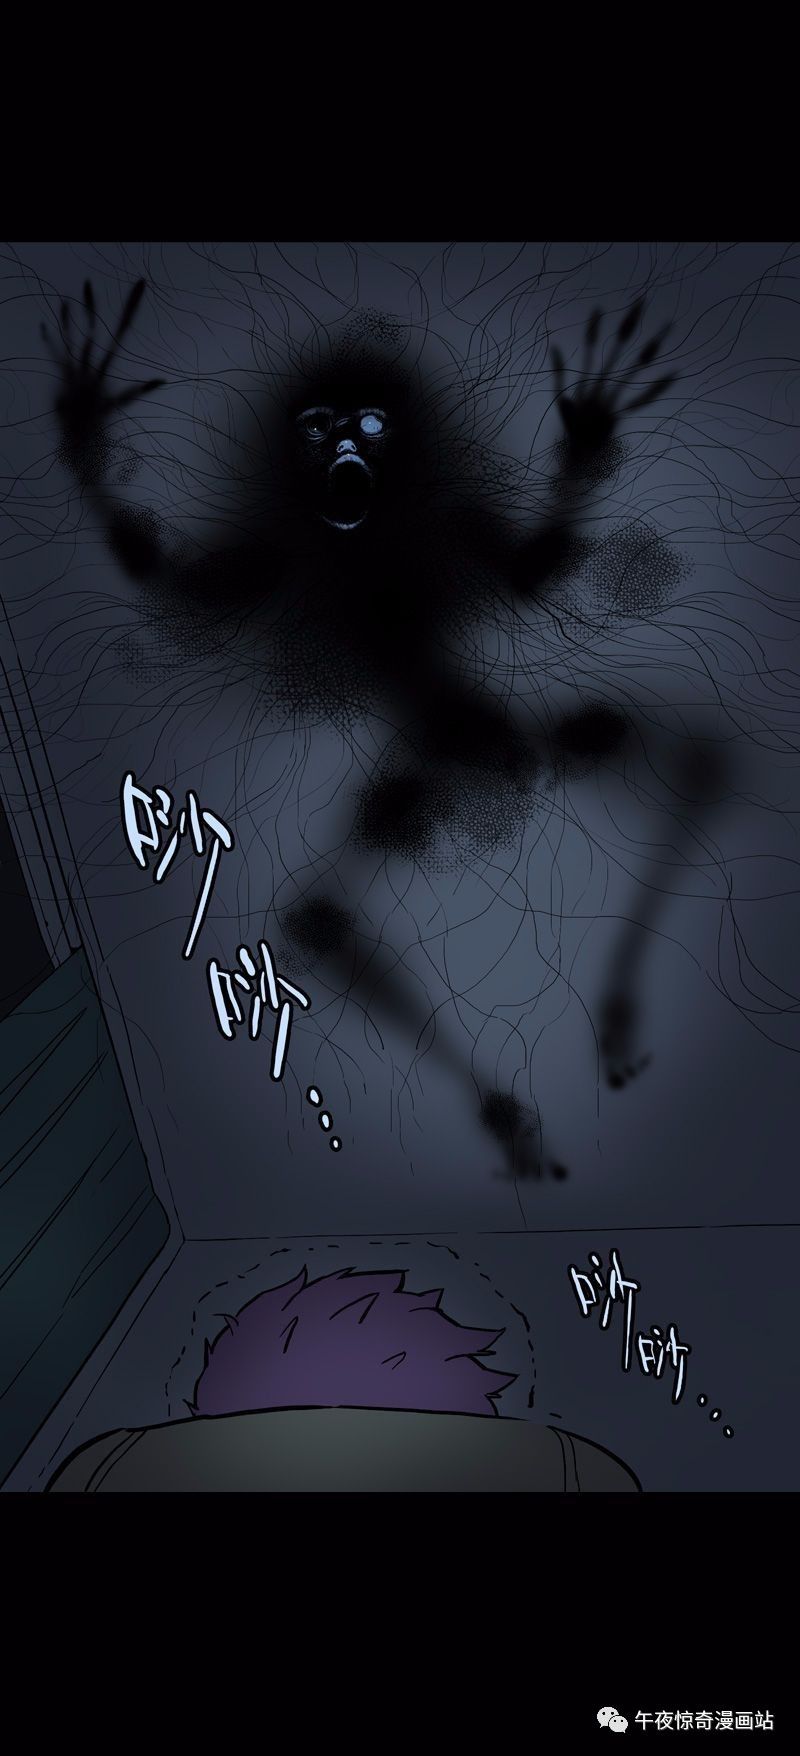 短篇鬼故事天花板上的人形污渍 恐怖漫画怪谈茶馆